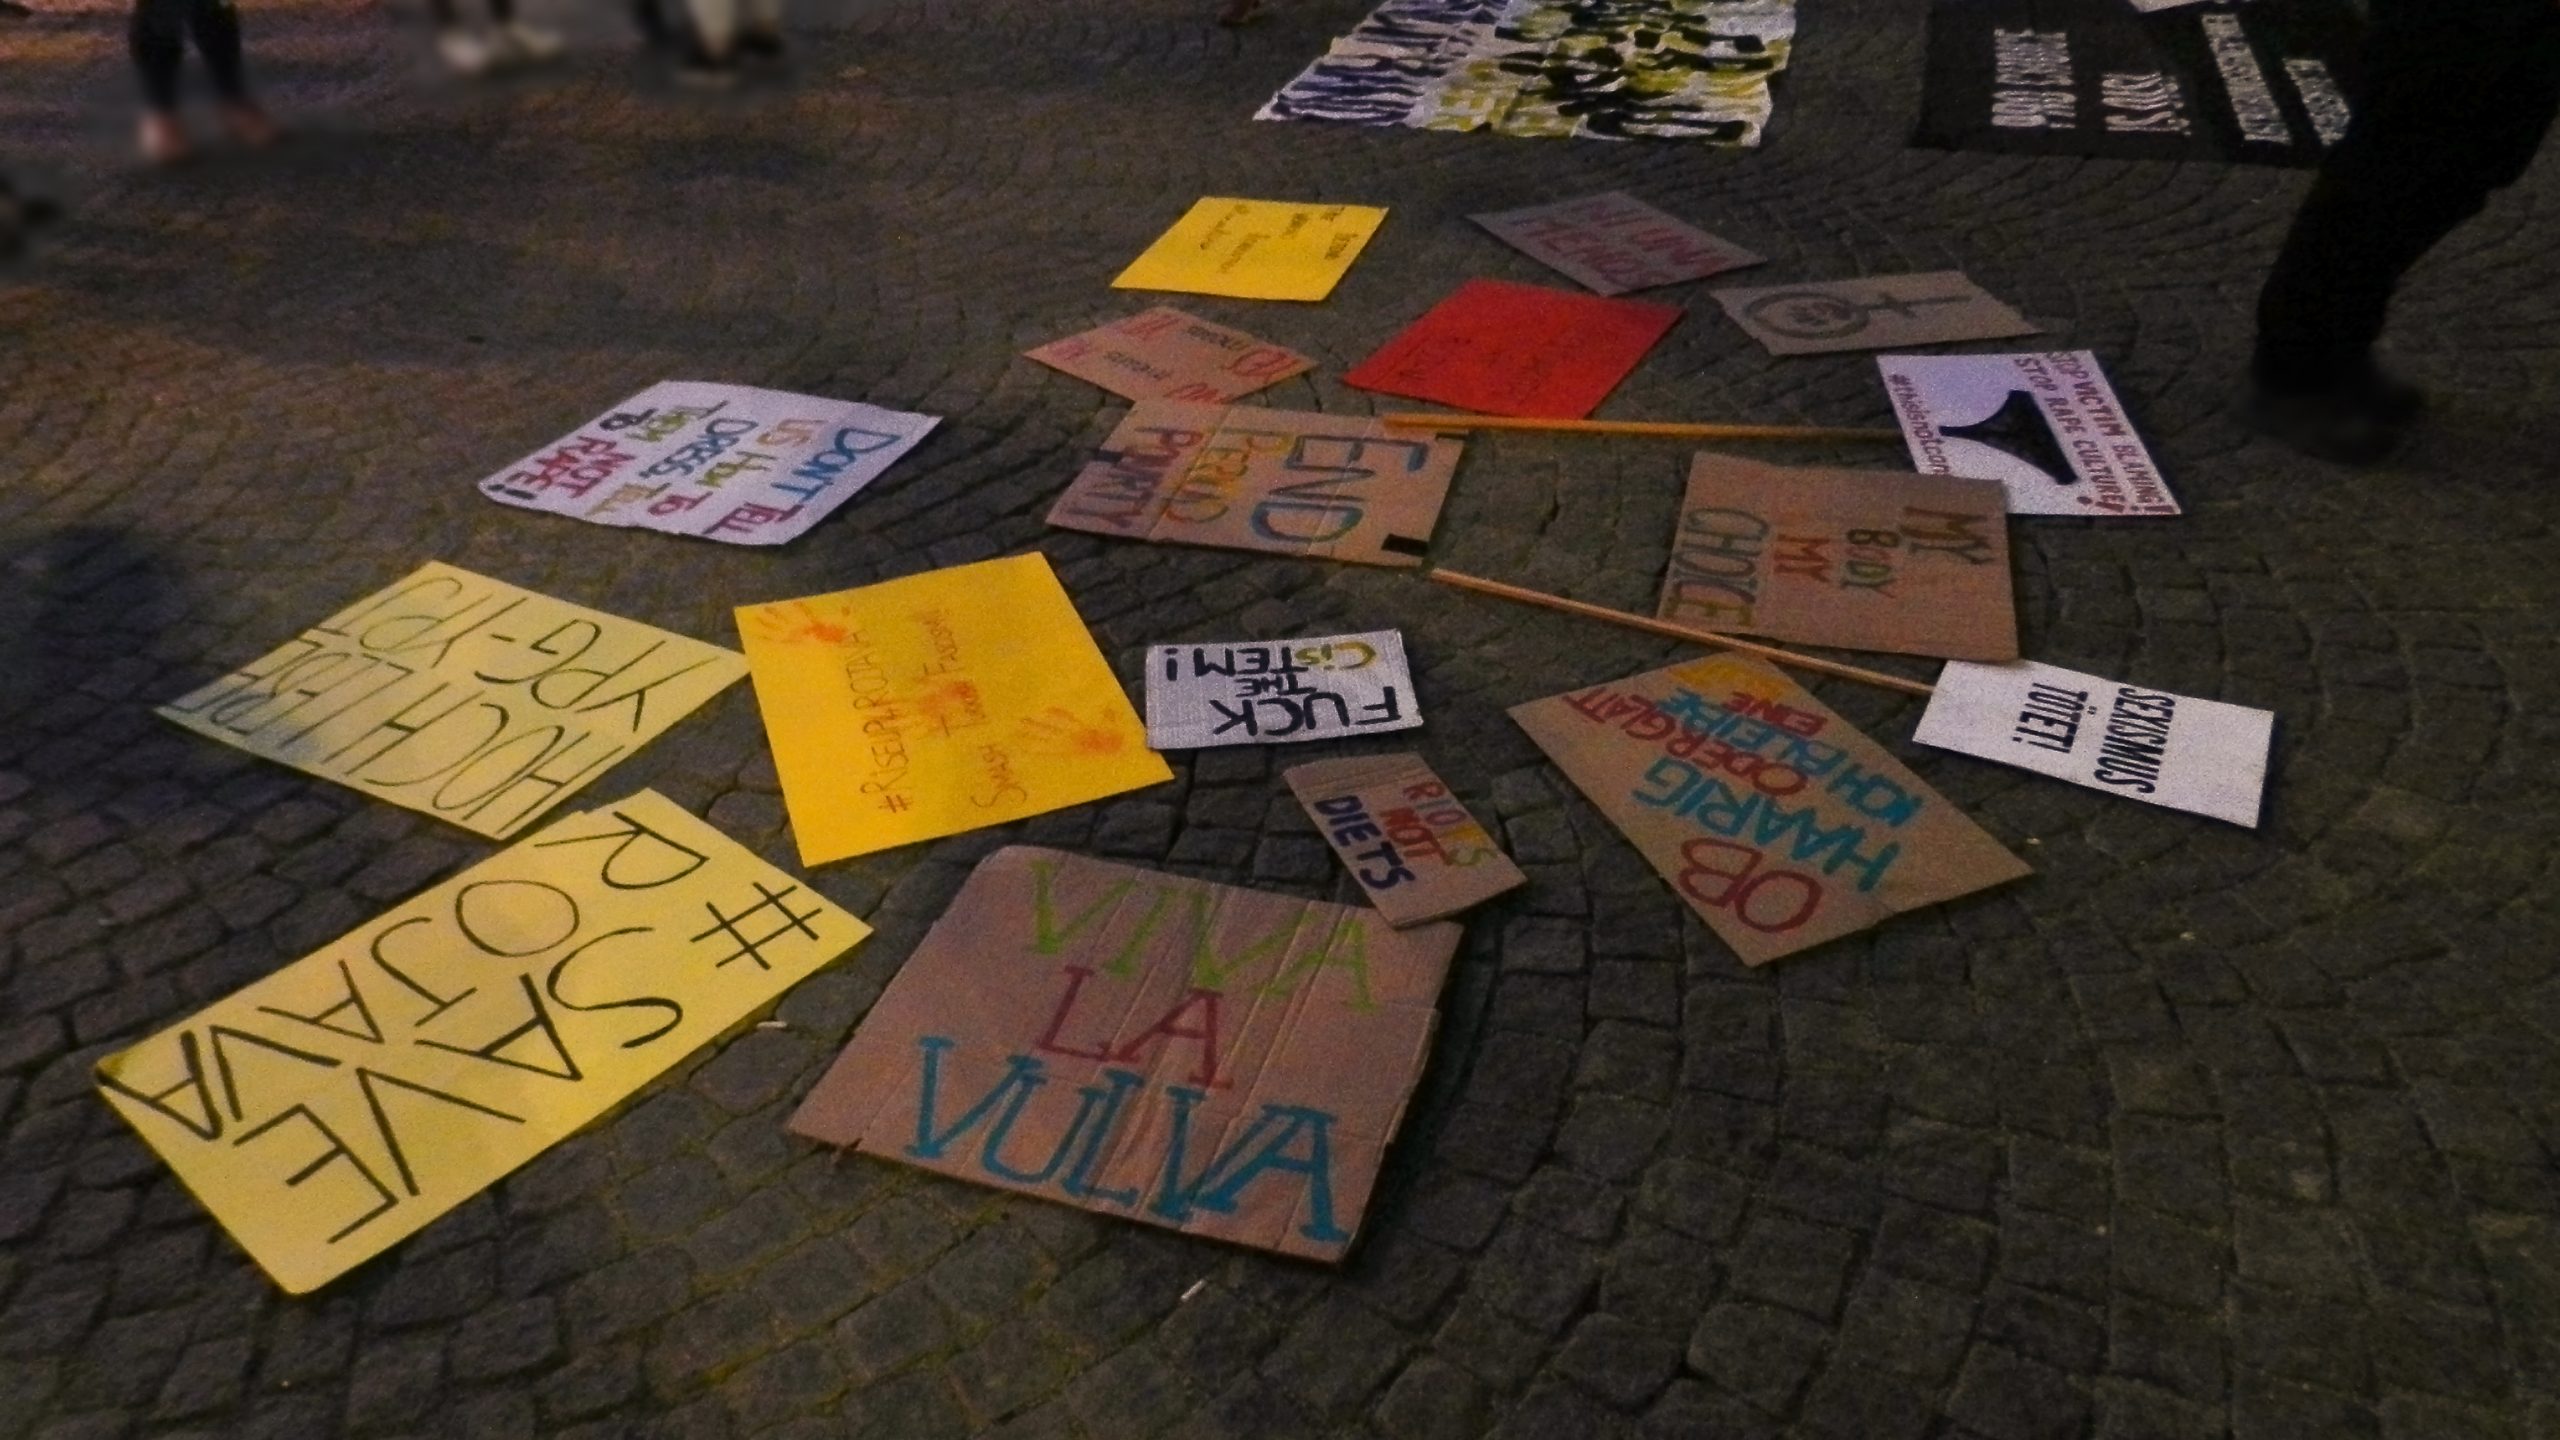 Foto vieler verschiedener Demo-Schilder – unter anderem mit folgenden Aufschriften: "Save Rojava", "Sexismus tötet!", "Ob haarig oder glatt, ich bleibe eine Slut", "Viva la Vulva", "Hoch lebe YPG-YPJ", "Fuck the cistem", "Riots not diets", "Don't tell us how to dress, tell them not to rape!"